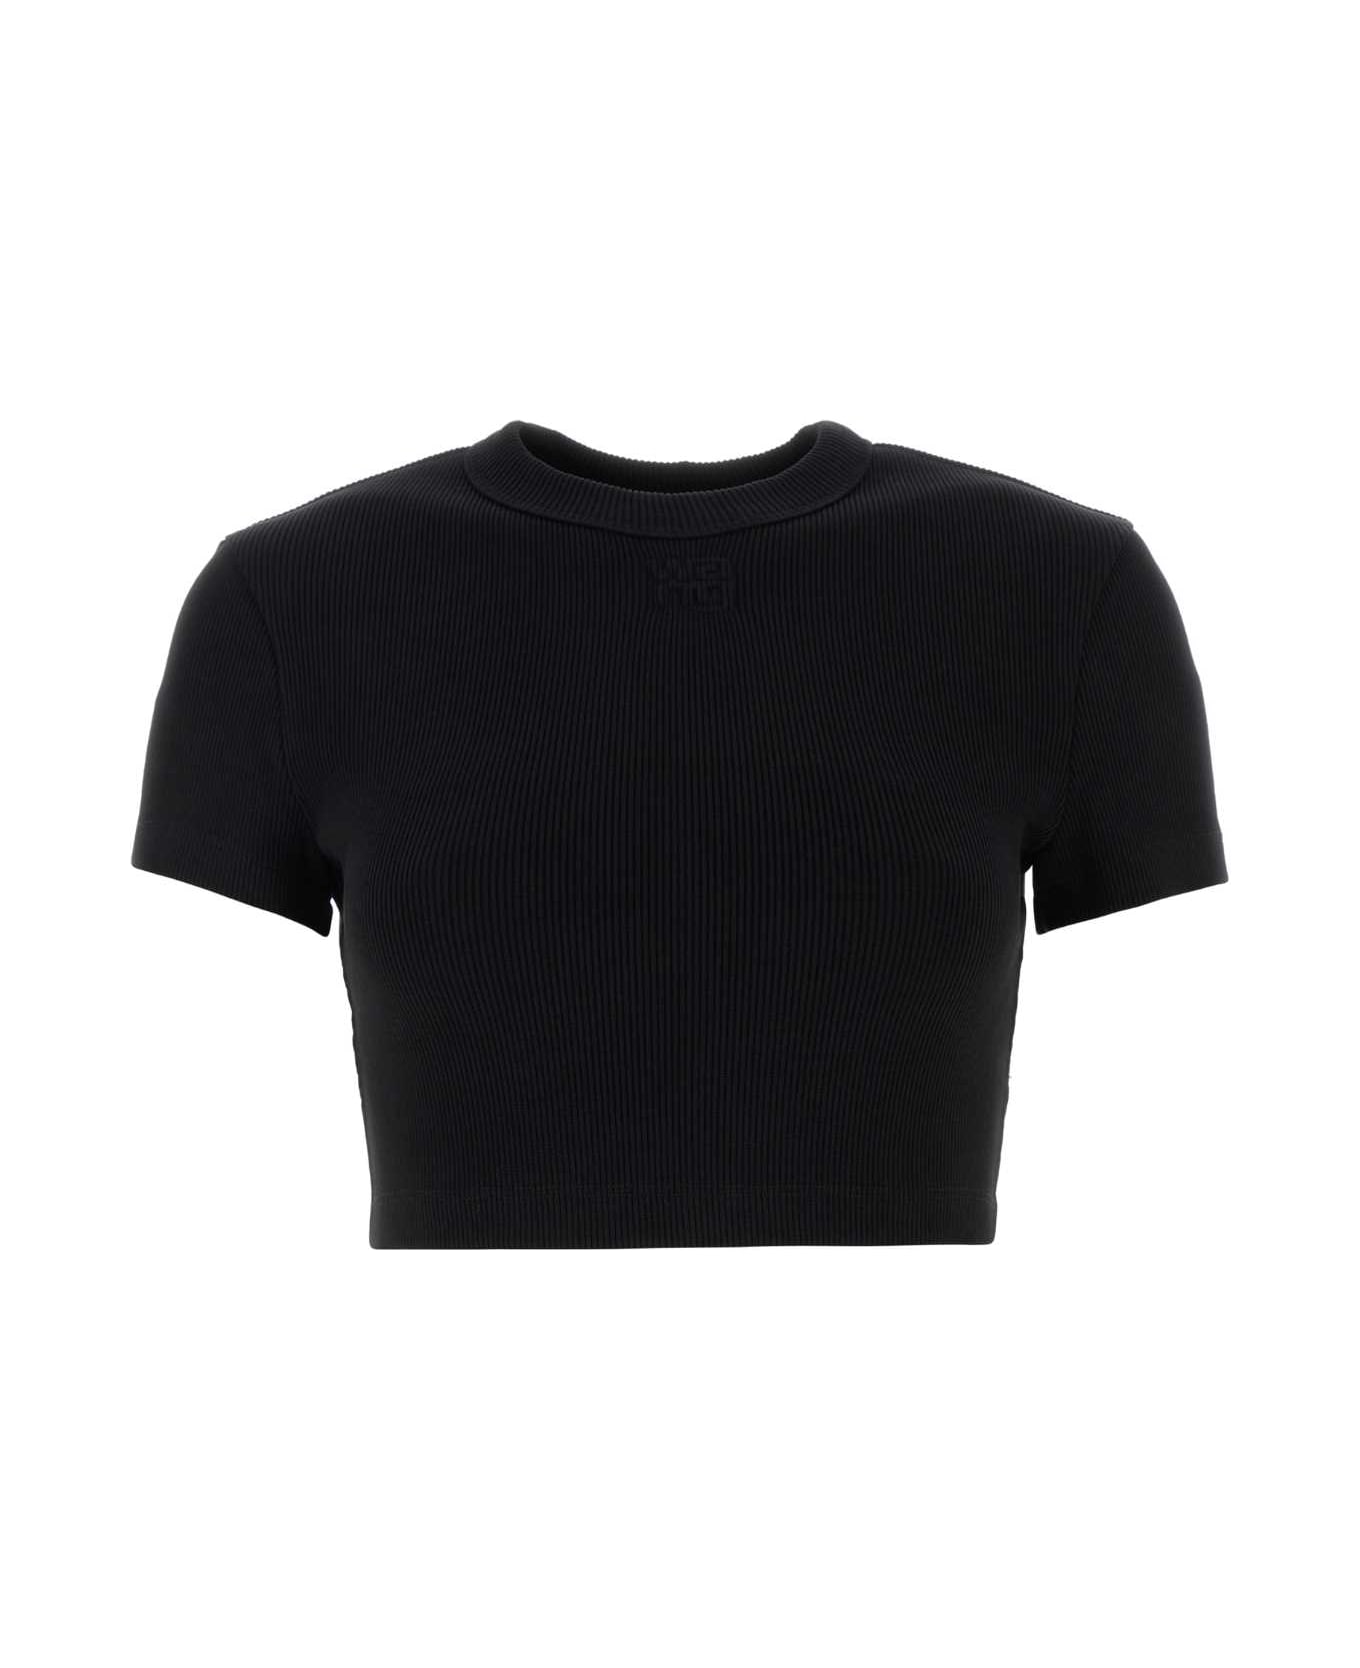 T by Alexander Wang Black Stretch Cotton T-shirt - BLACK